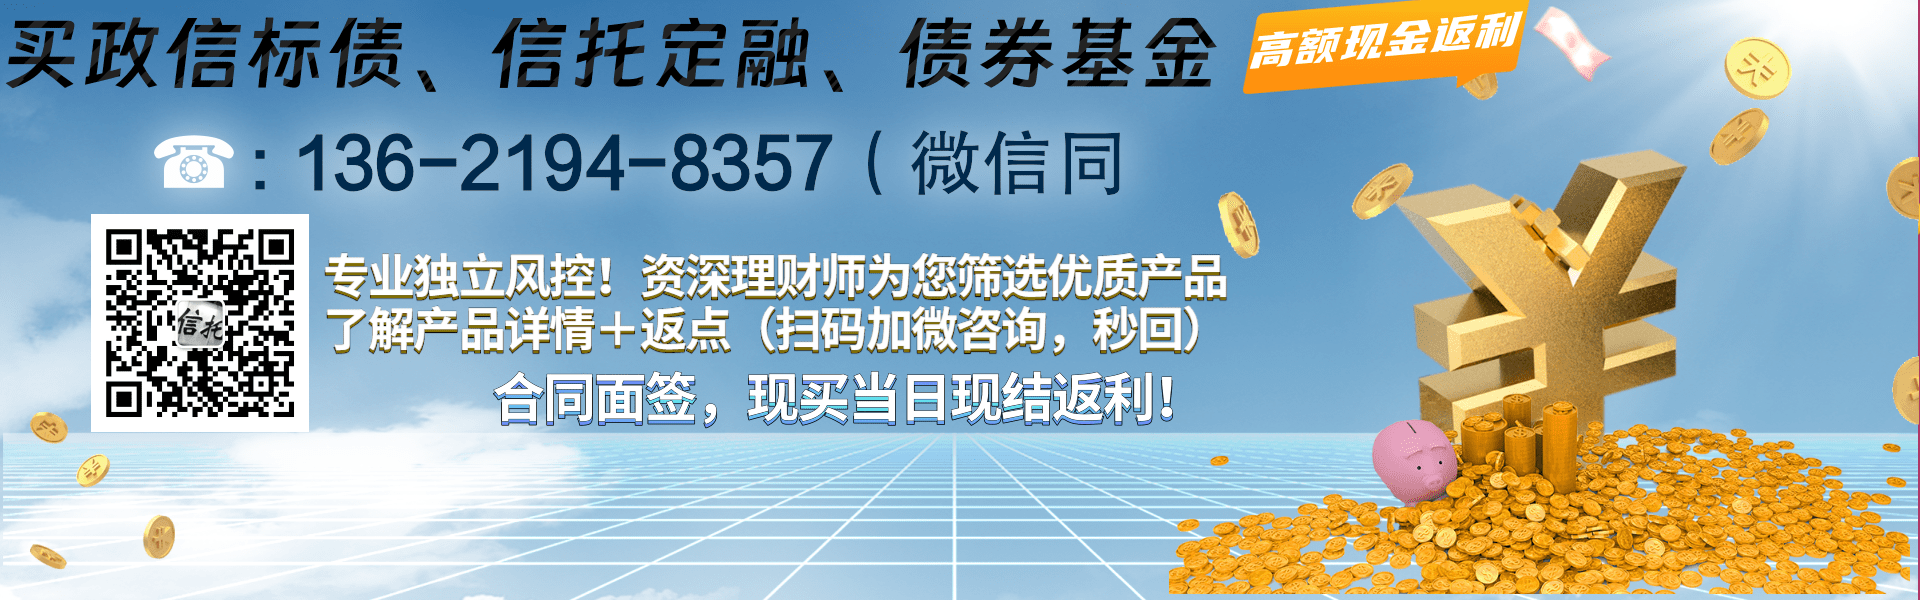 A类央企信托-JY60号·安徽NG非标集合资金信托计划